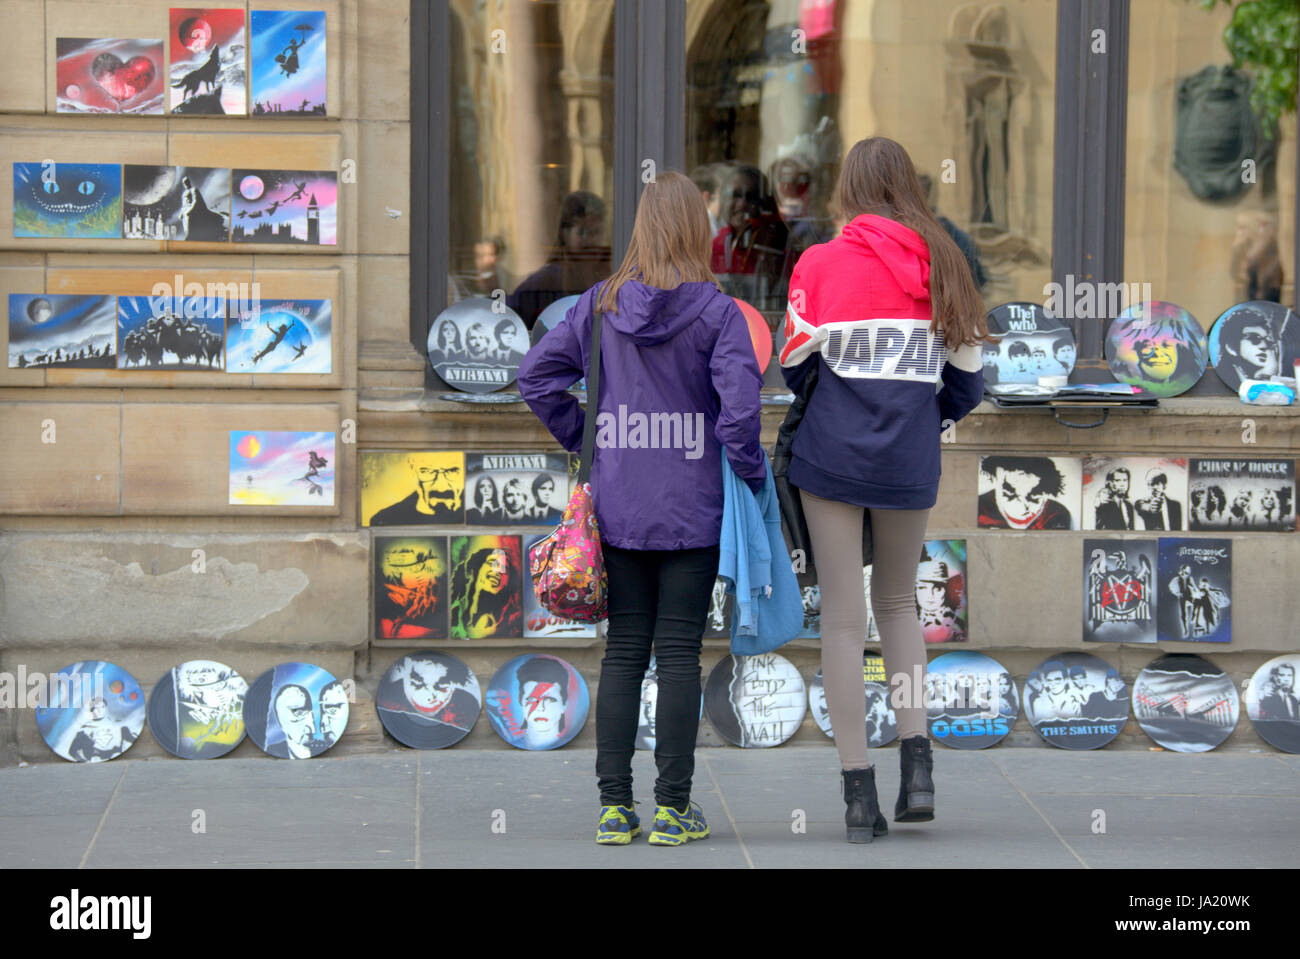 Touristen auf den Straßen von Glasgow Schottland Kunstwerke kaufen Stockfoto